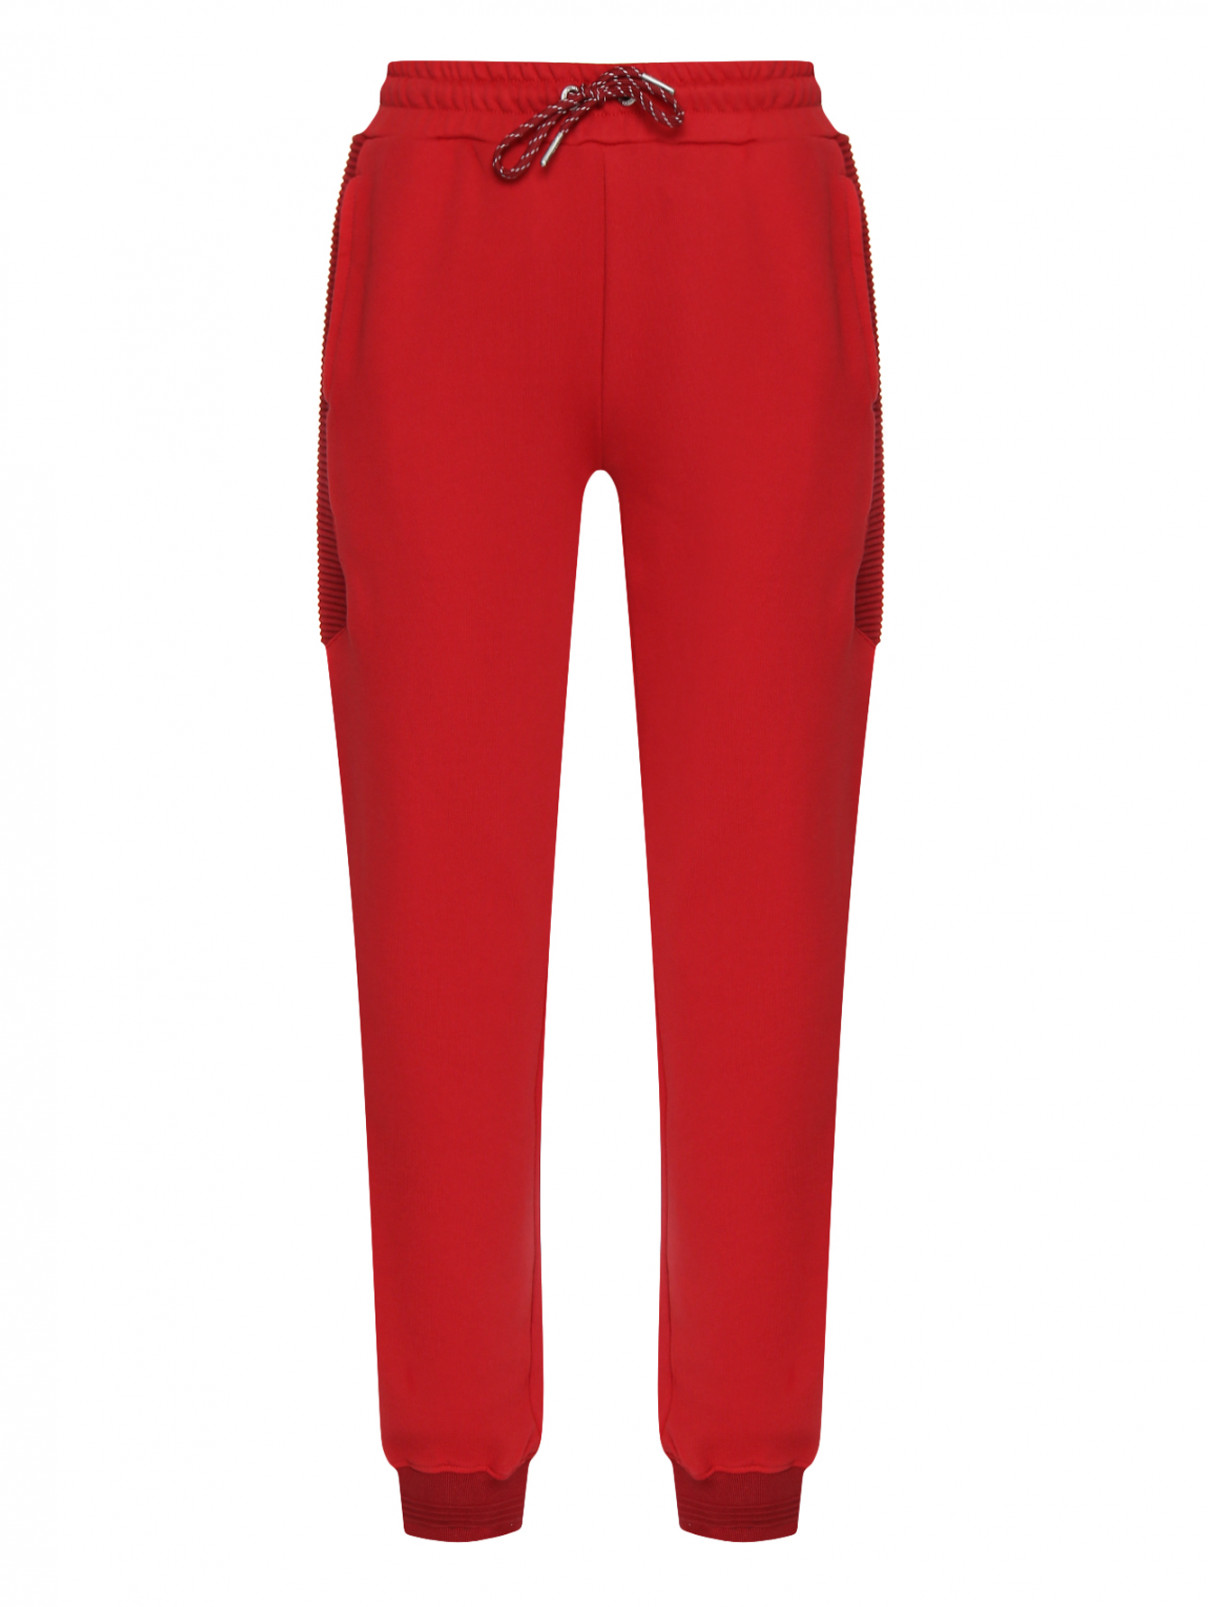 Спортивные брюки из хлопка на резинке BOSCO  –  Общий вид  – Цвет:  Красный